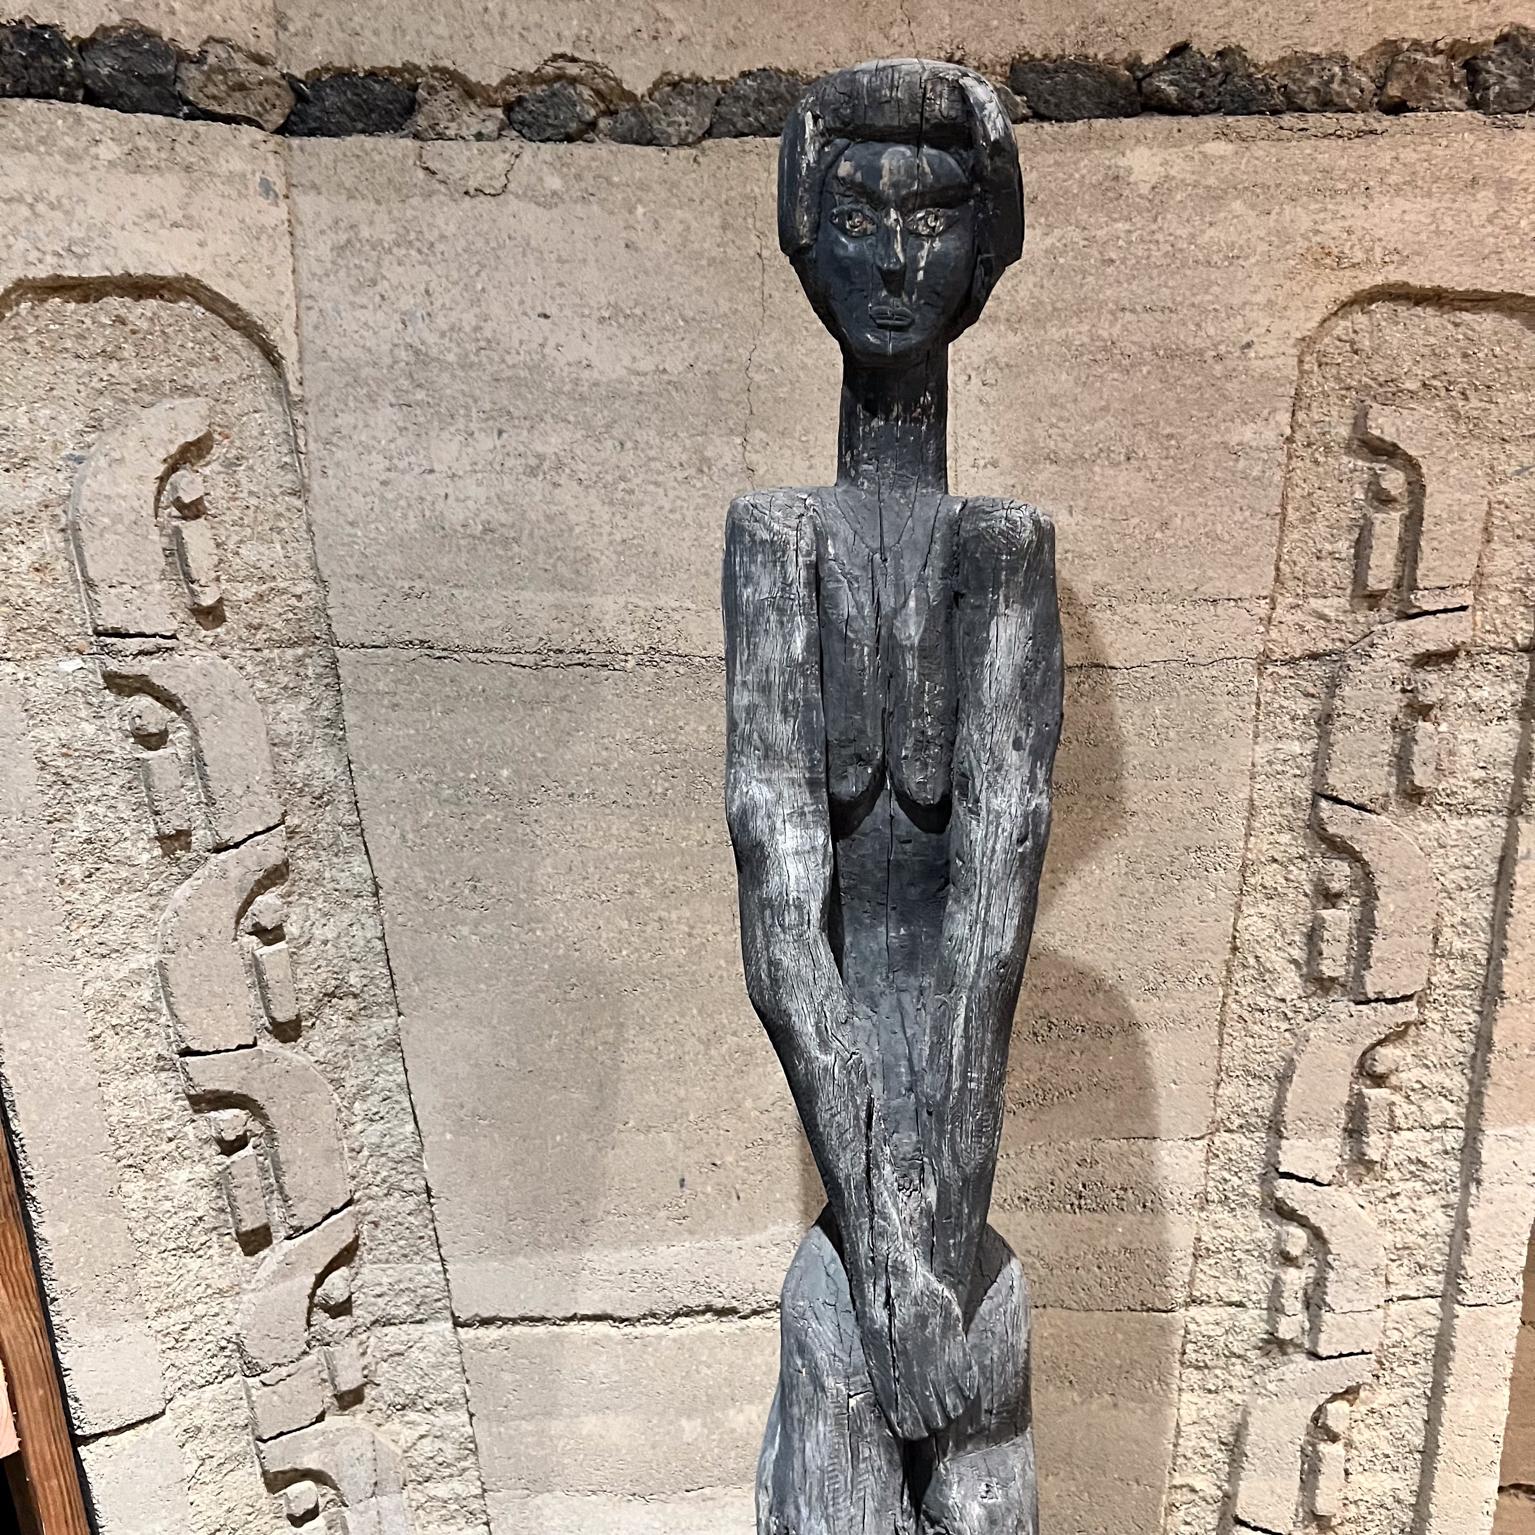 Sculpture française primitive sculptée à la main, représentant une femme debout
Design/One en bois fabriqué à la main et monté sur une base en pierre brute
Dans le style de Giacometti, idéal pour les fans de Jenerette Picasso et Prouvé.
71 h avec